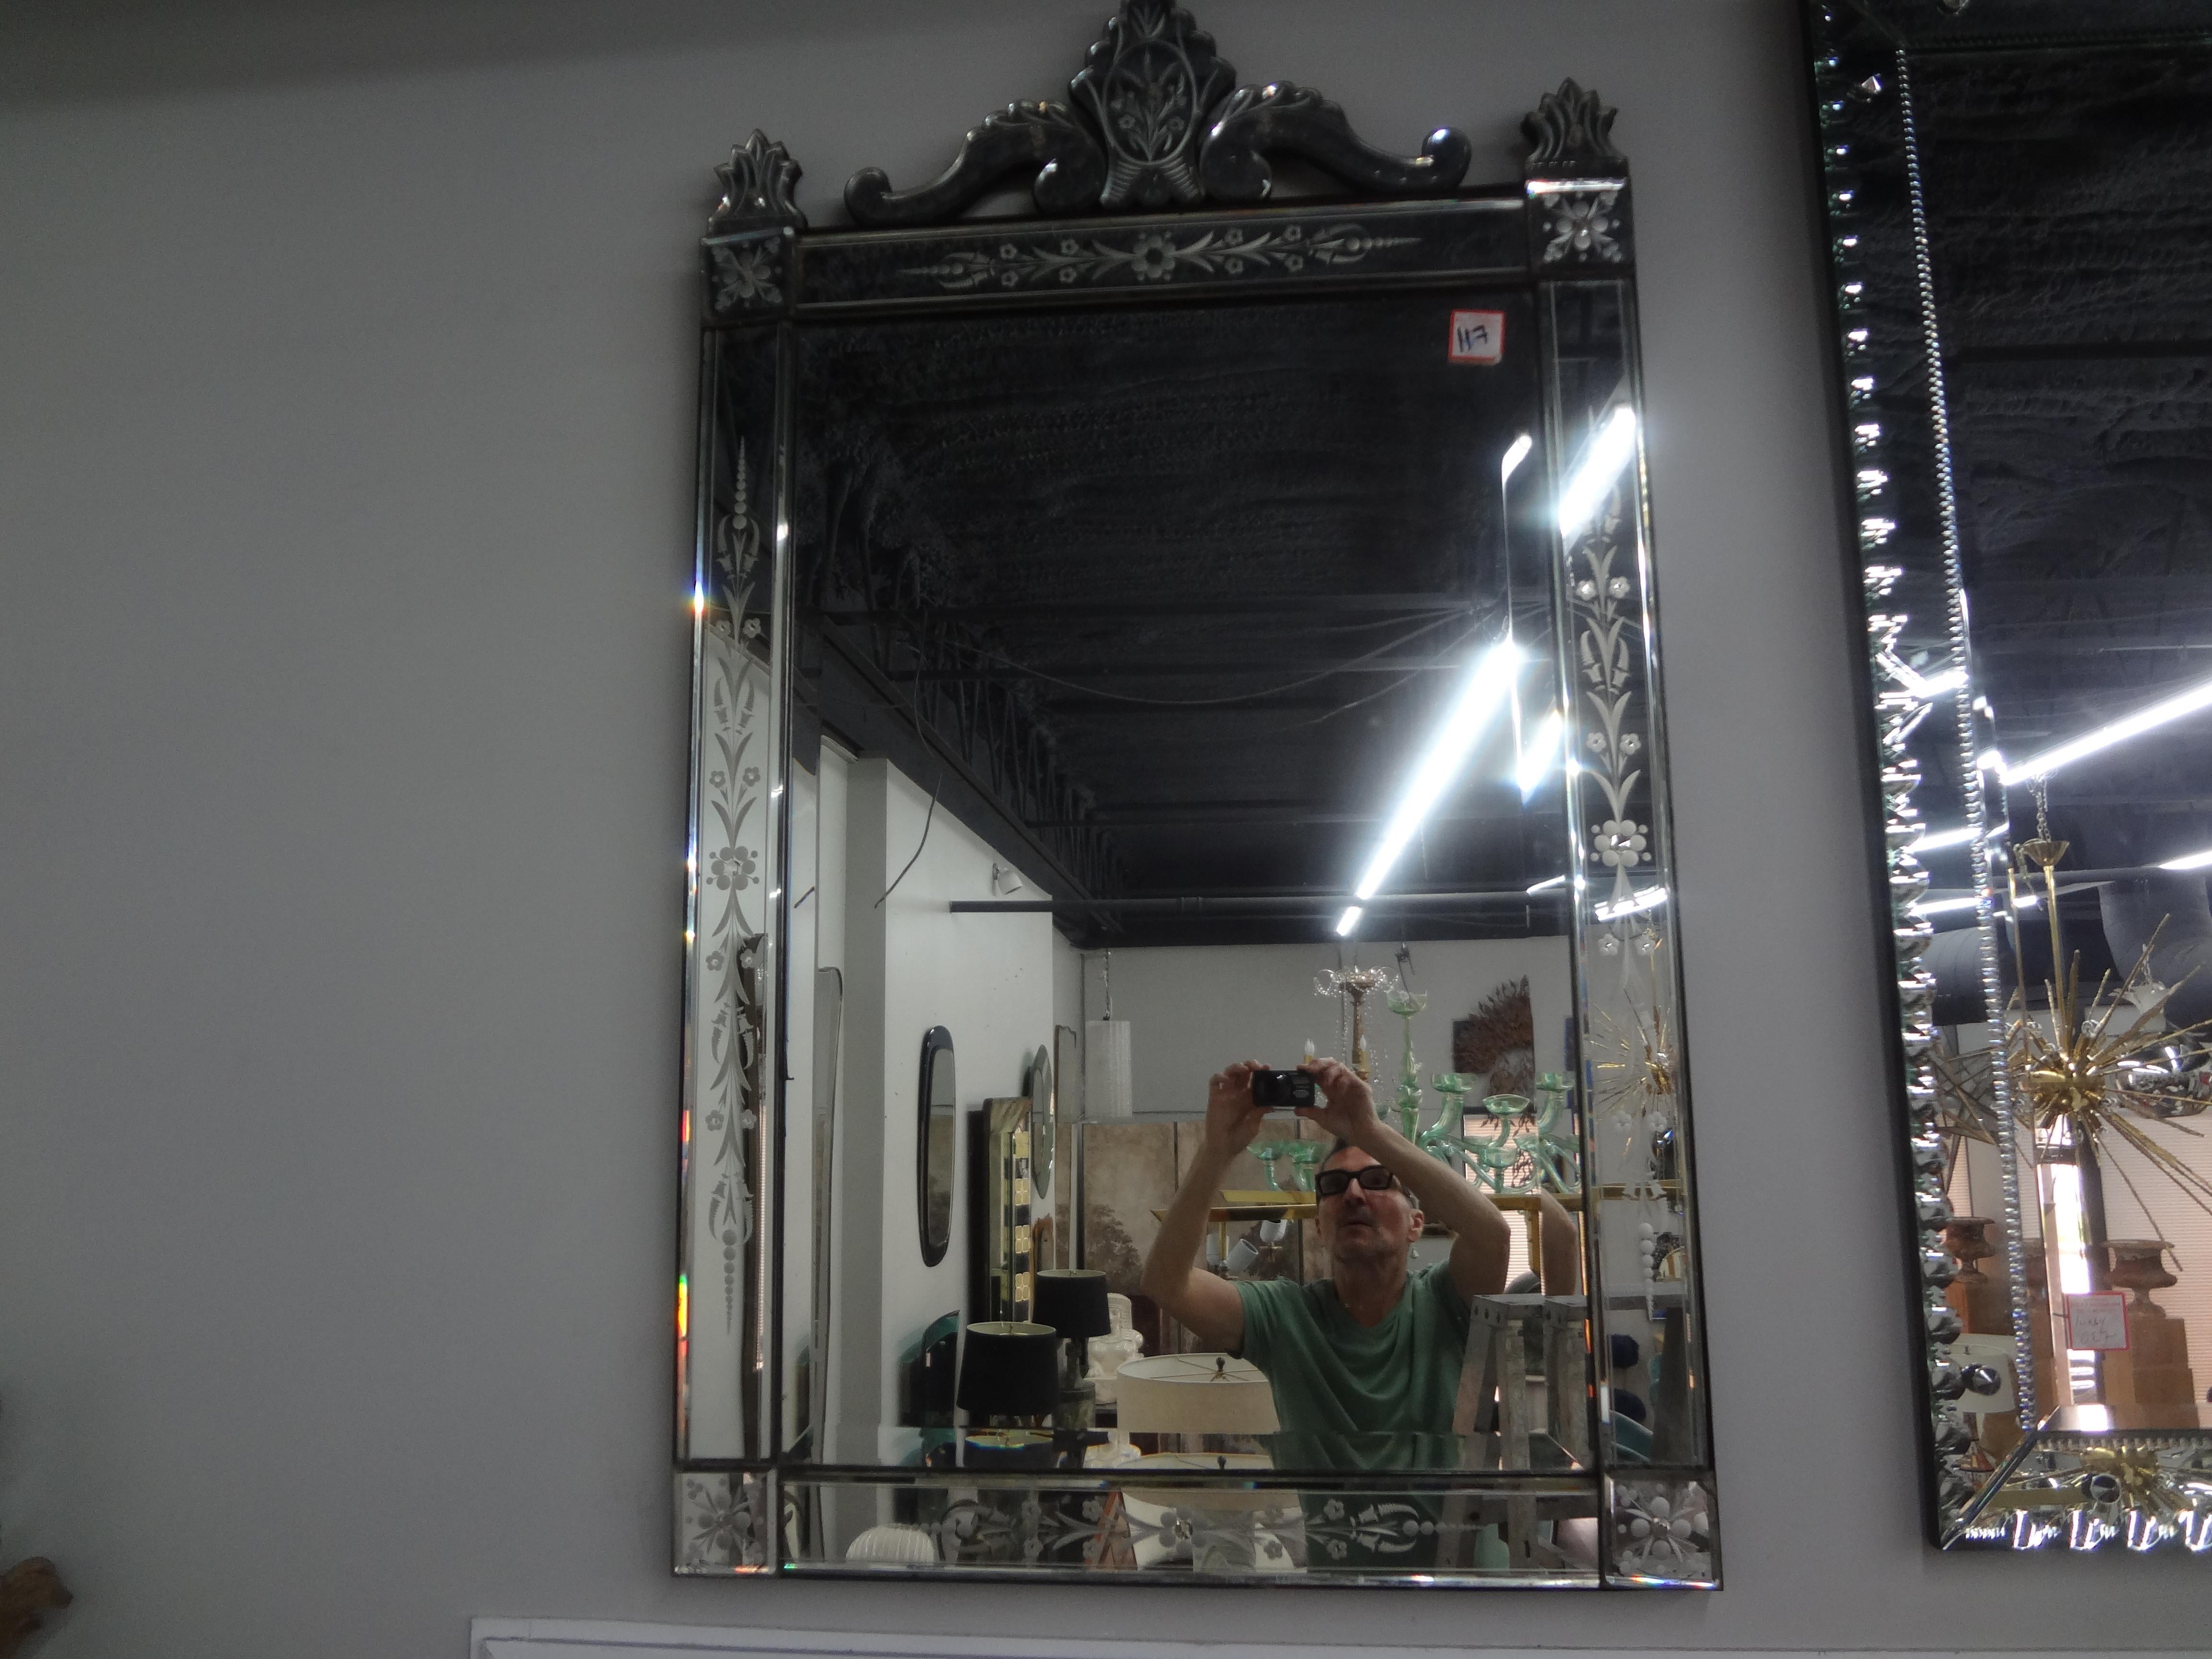 Miroir vénitien antique gravé et biseauté.
Joli miroir vénitien gravé et biseauté des années 1940. 
Ce grand miroir vénitien ancien est en très bon état avec quelques rousseurs naturelles liées à l'âge. Ce miroir italien polyvalent conviendrait